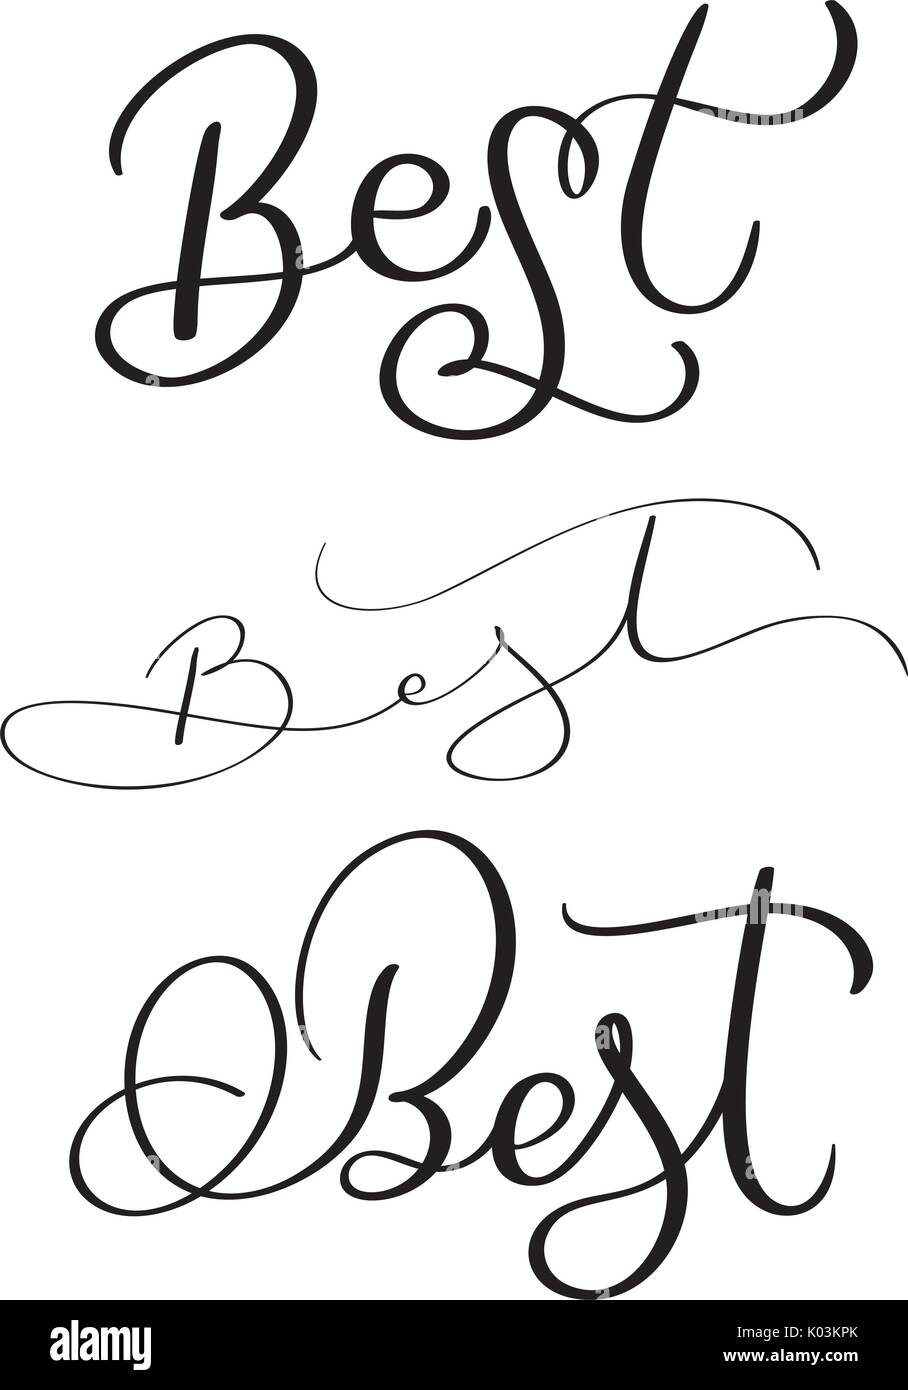 Der beste Wort auf weißem Hintergrund. Hand gezeichnet Kalligraphie schrift Vektor-illustration EPS 10. Stock Vektor